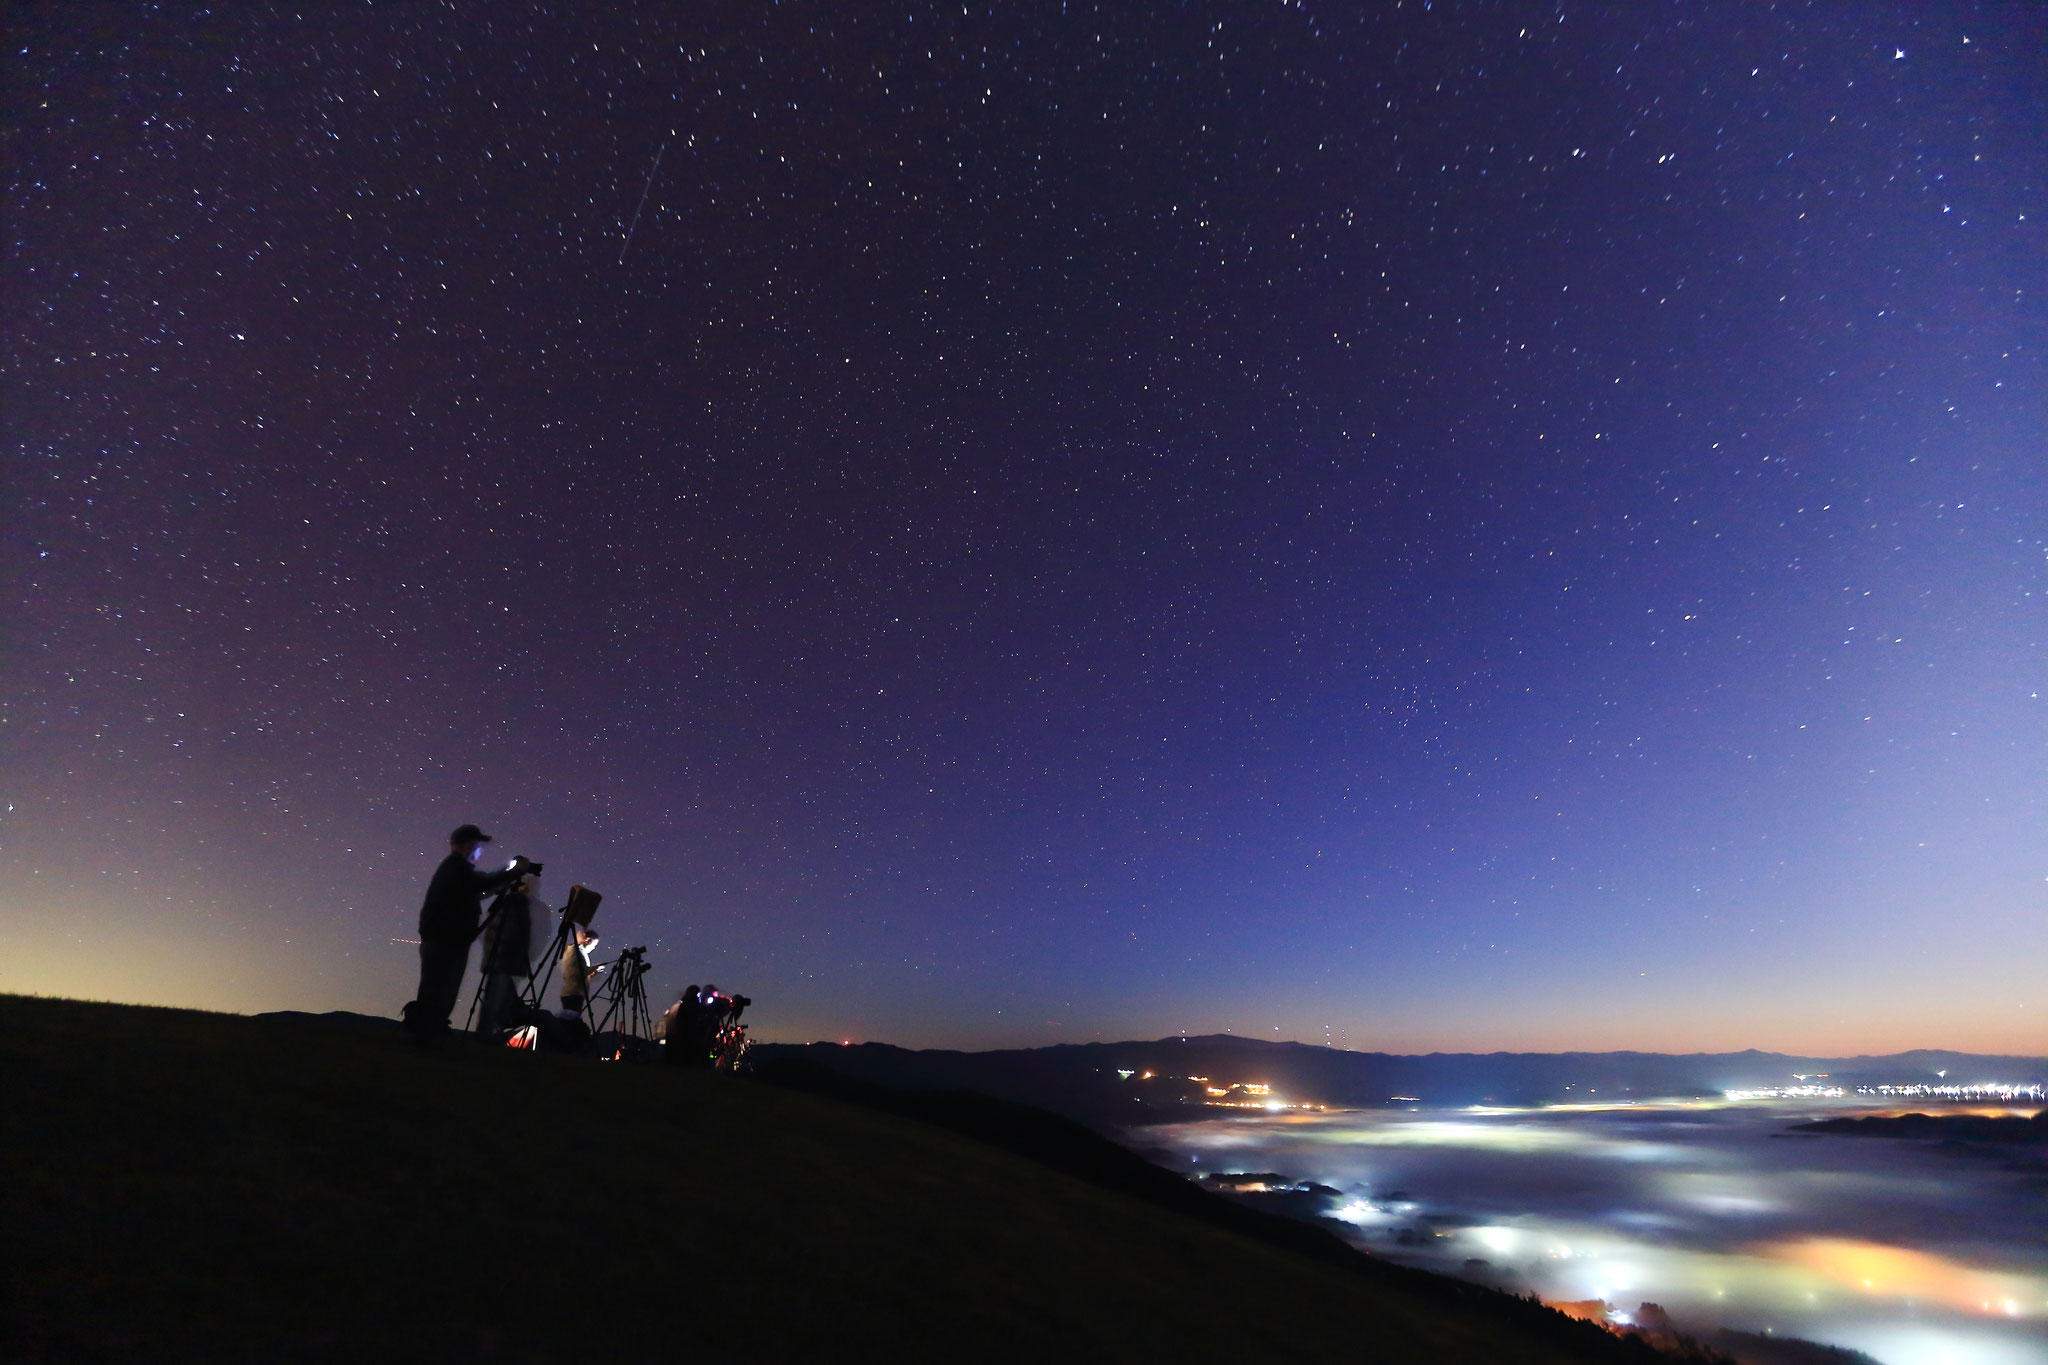 夜空に迫る朝空の下で、雲海狙うカメラマン達(10/21 湧水町 魚野フライト)